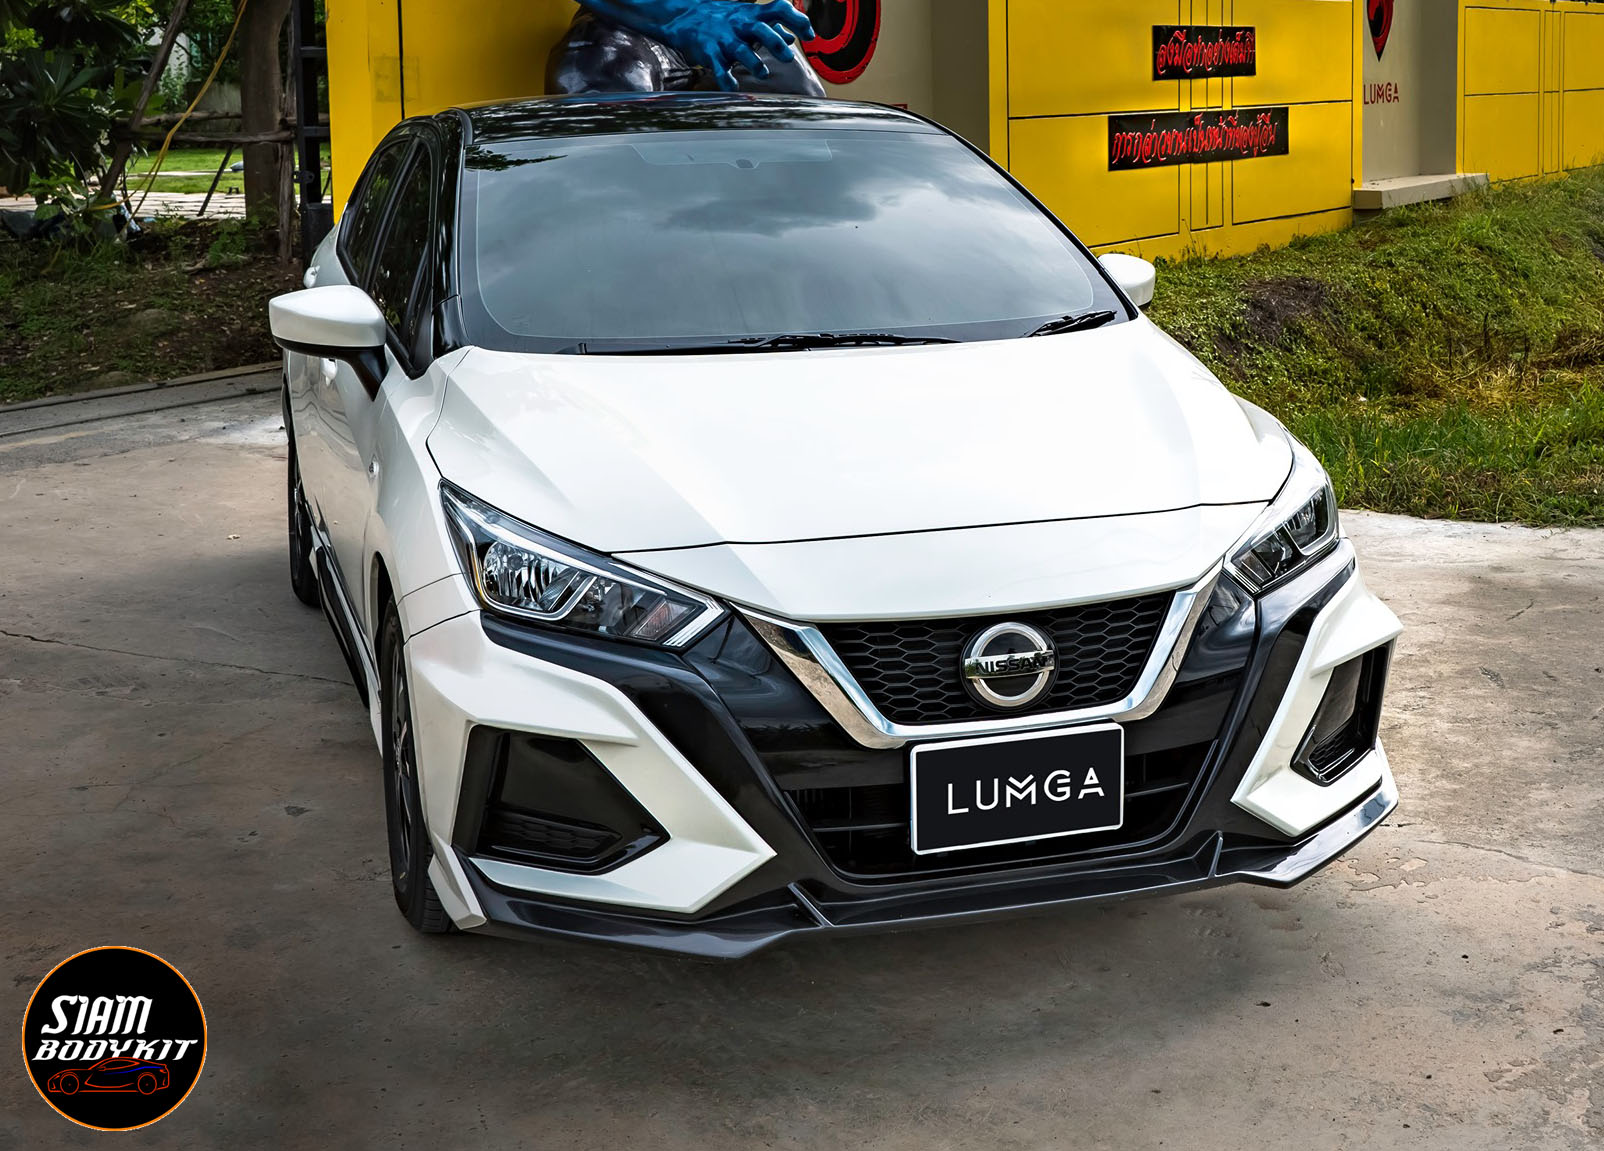 Bodykit LUMGA cho Nissan Almera 2020-2021